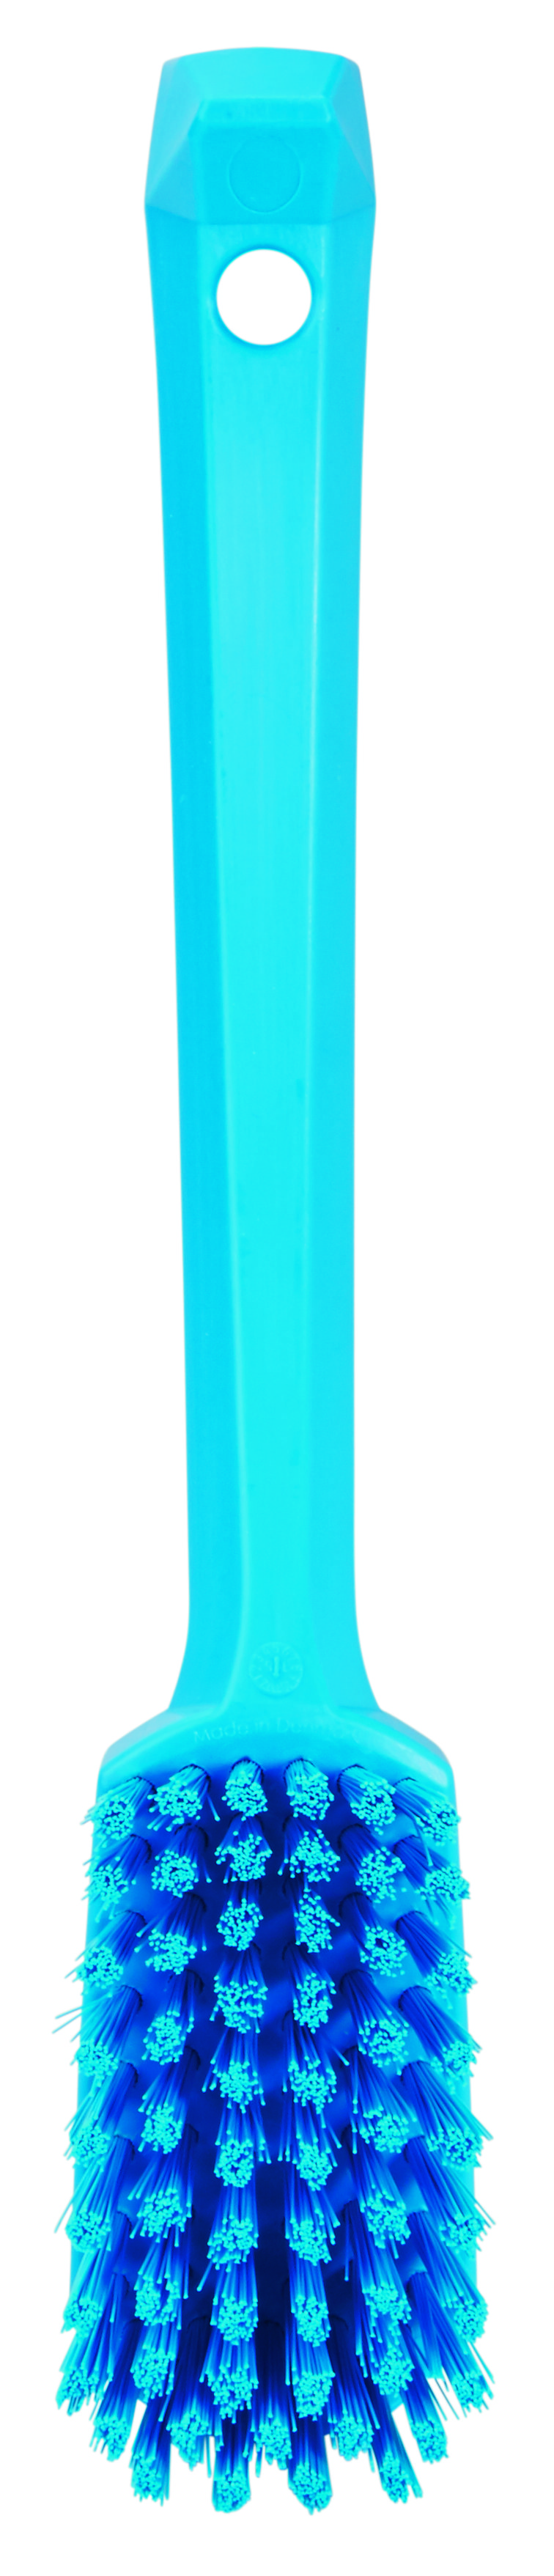 Щетка Vikan универсальная с изогнутой ручкой, 260 мм, средняя жесткость, синяя